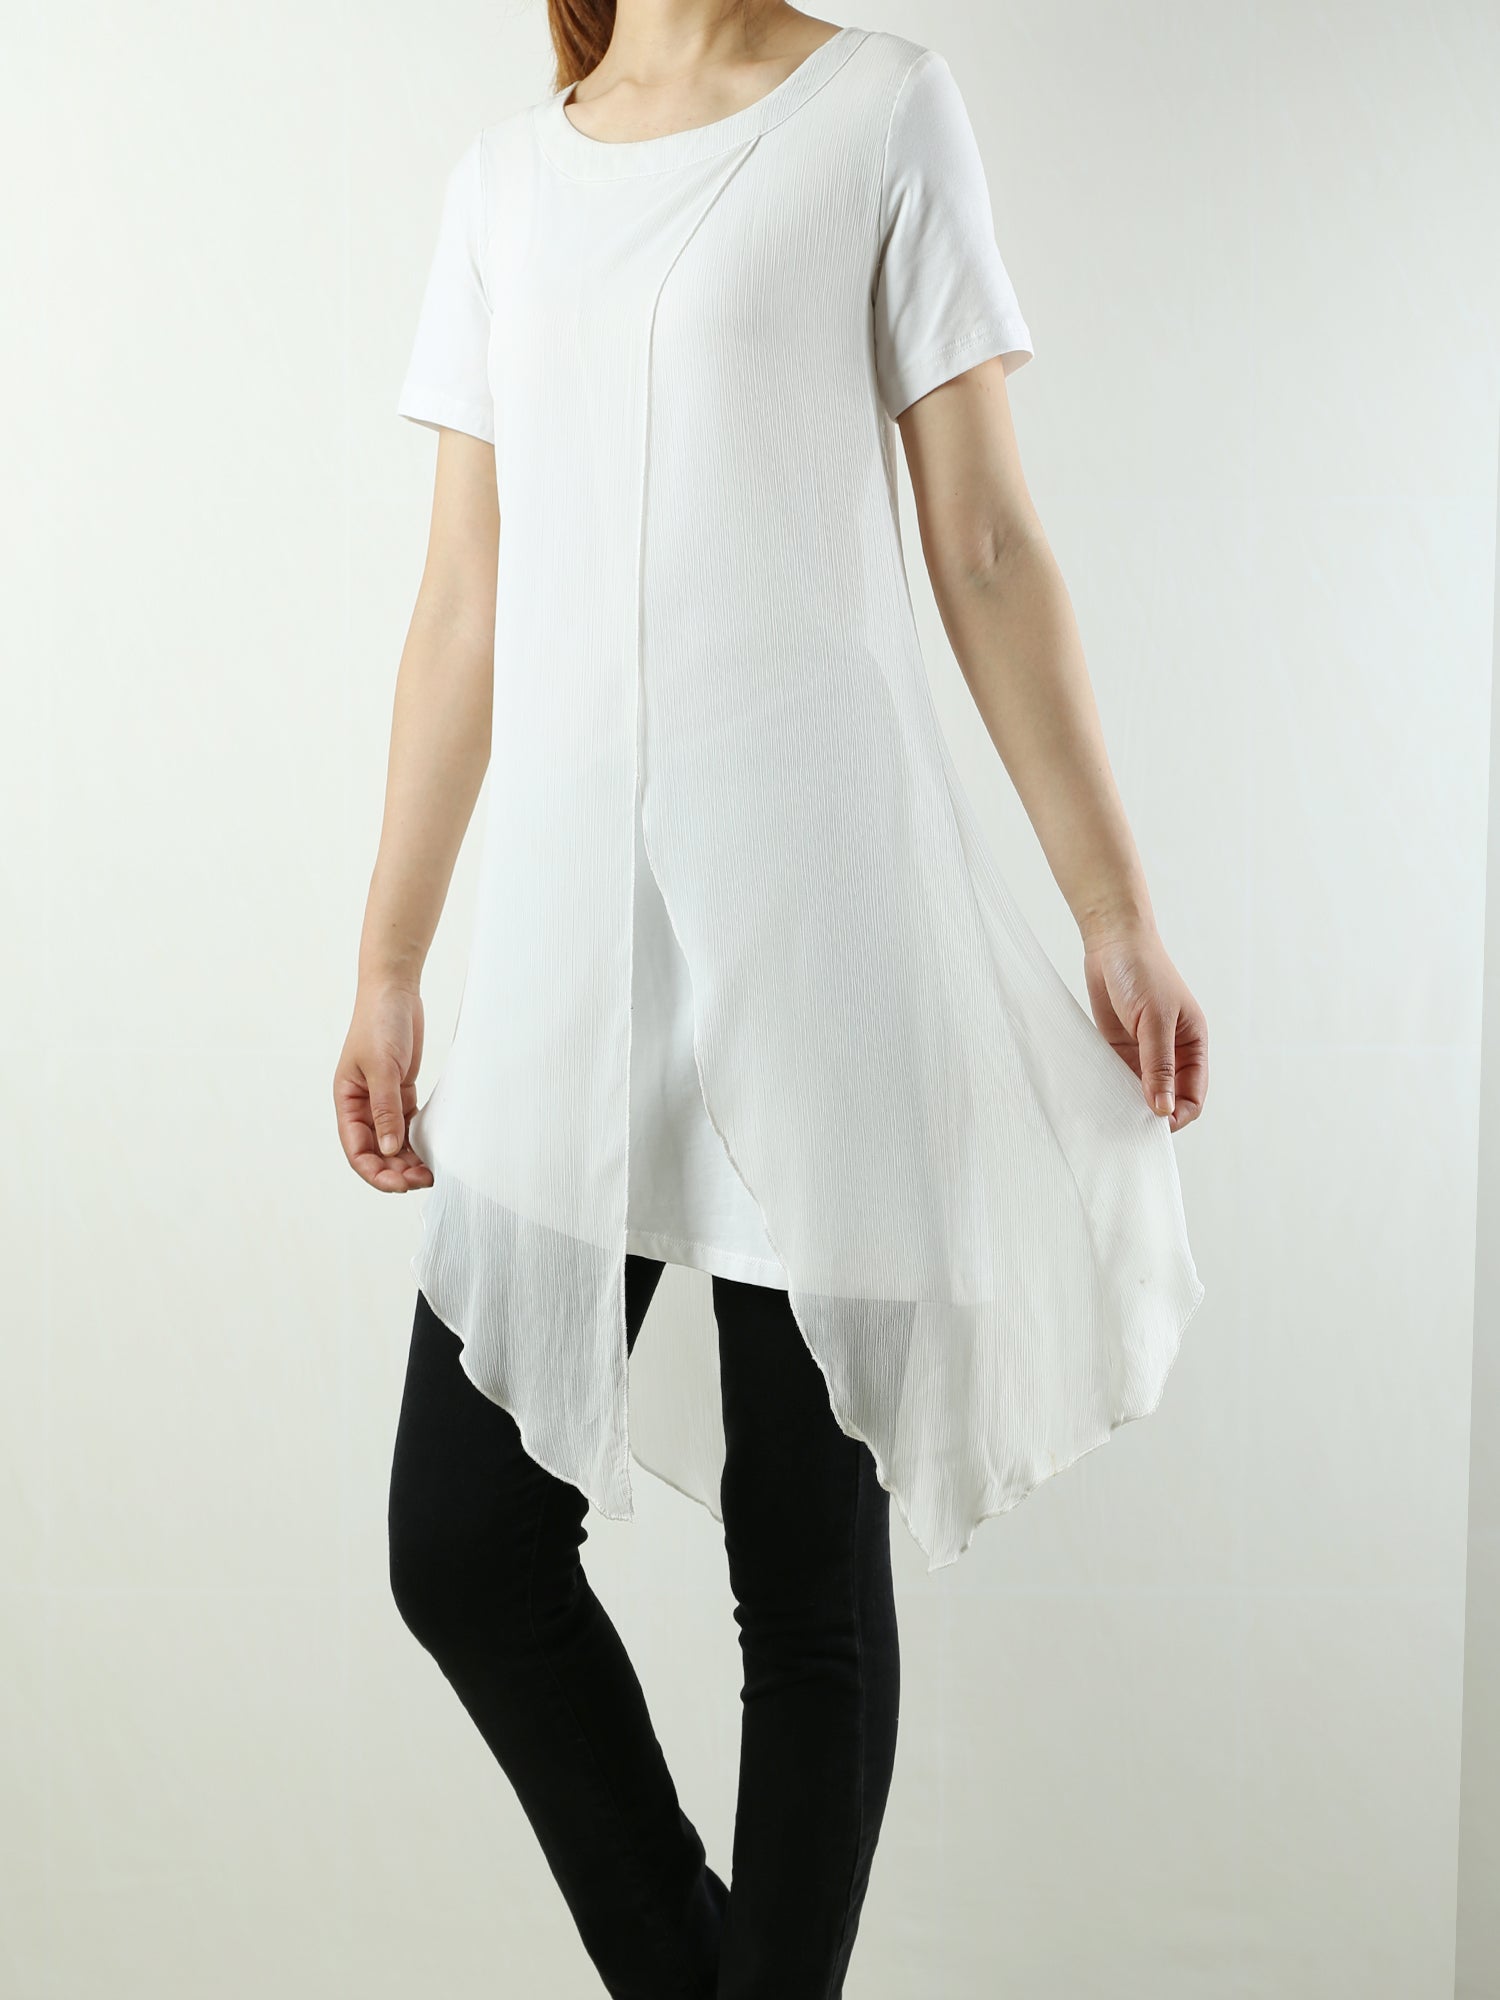 Womens cotton Tunic Dress/Short Sleeve tunic Top/Plus Size Tunic Top/O –  lijingshop